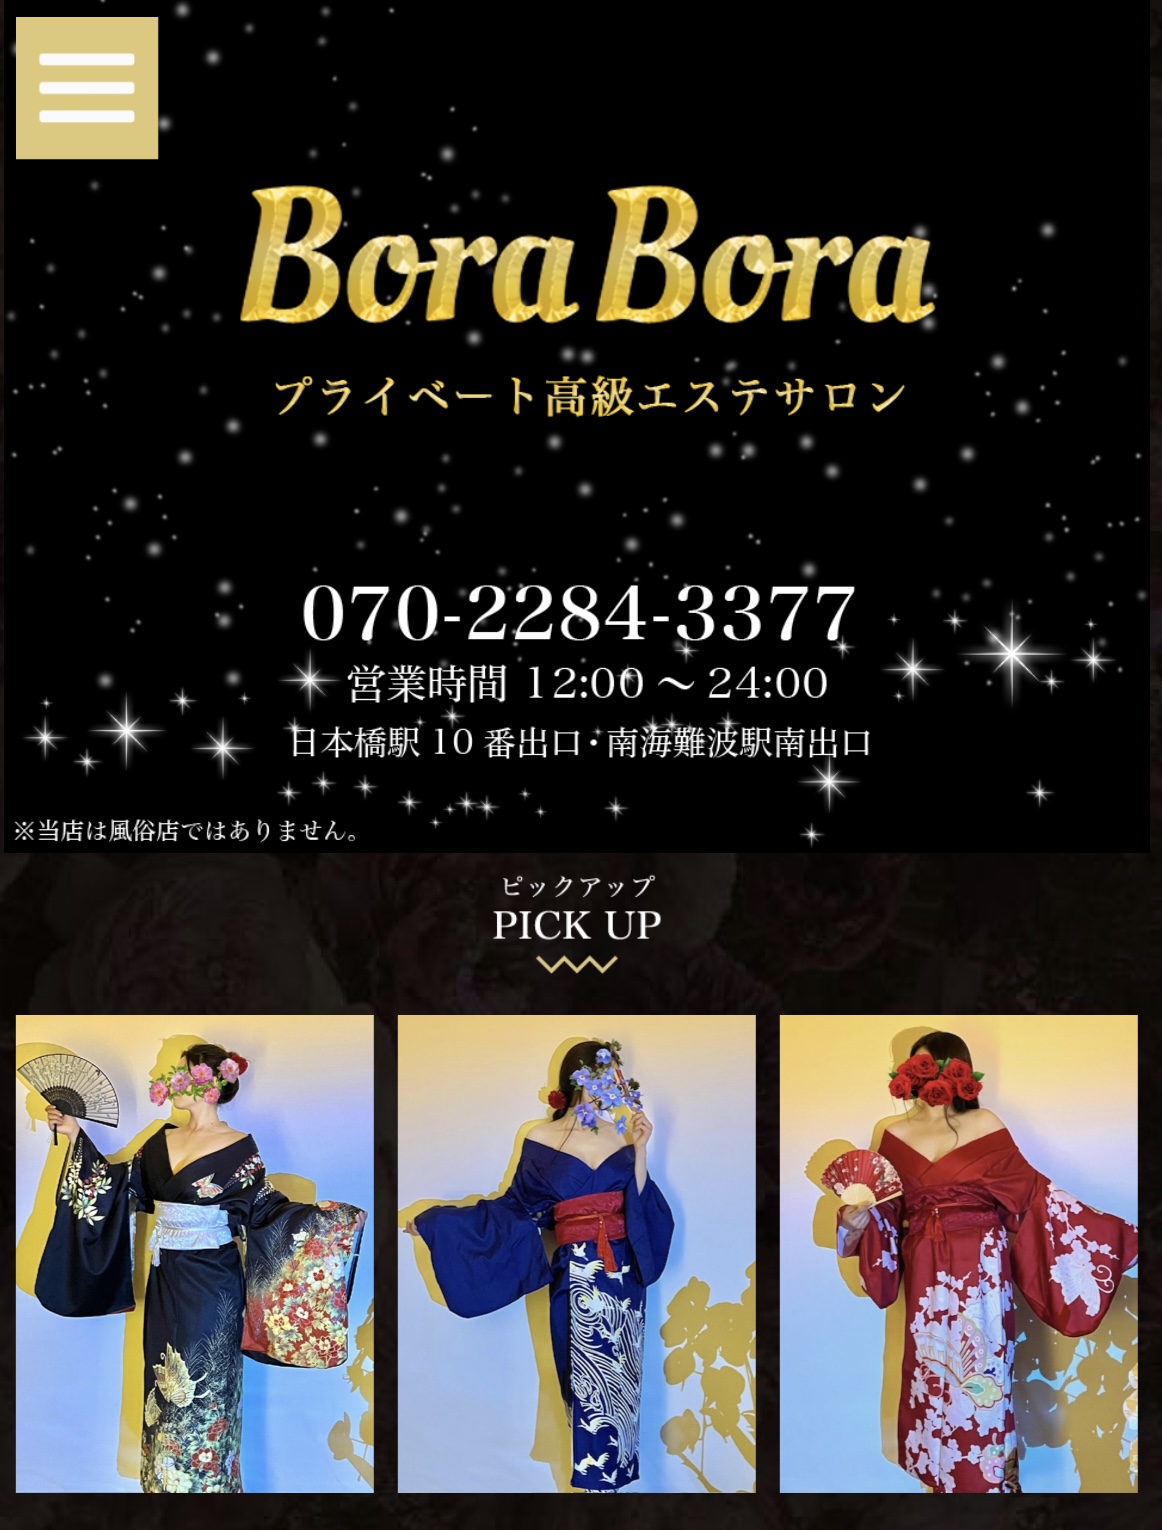 『 ボラボラ(Bora Bora)』体験談。